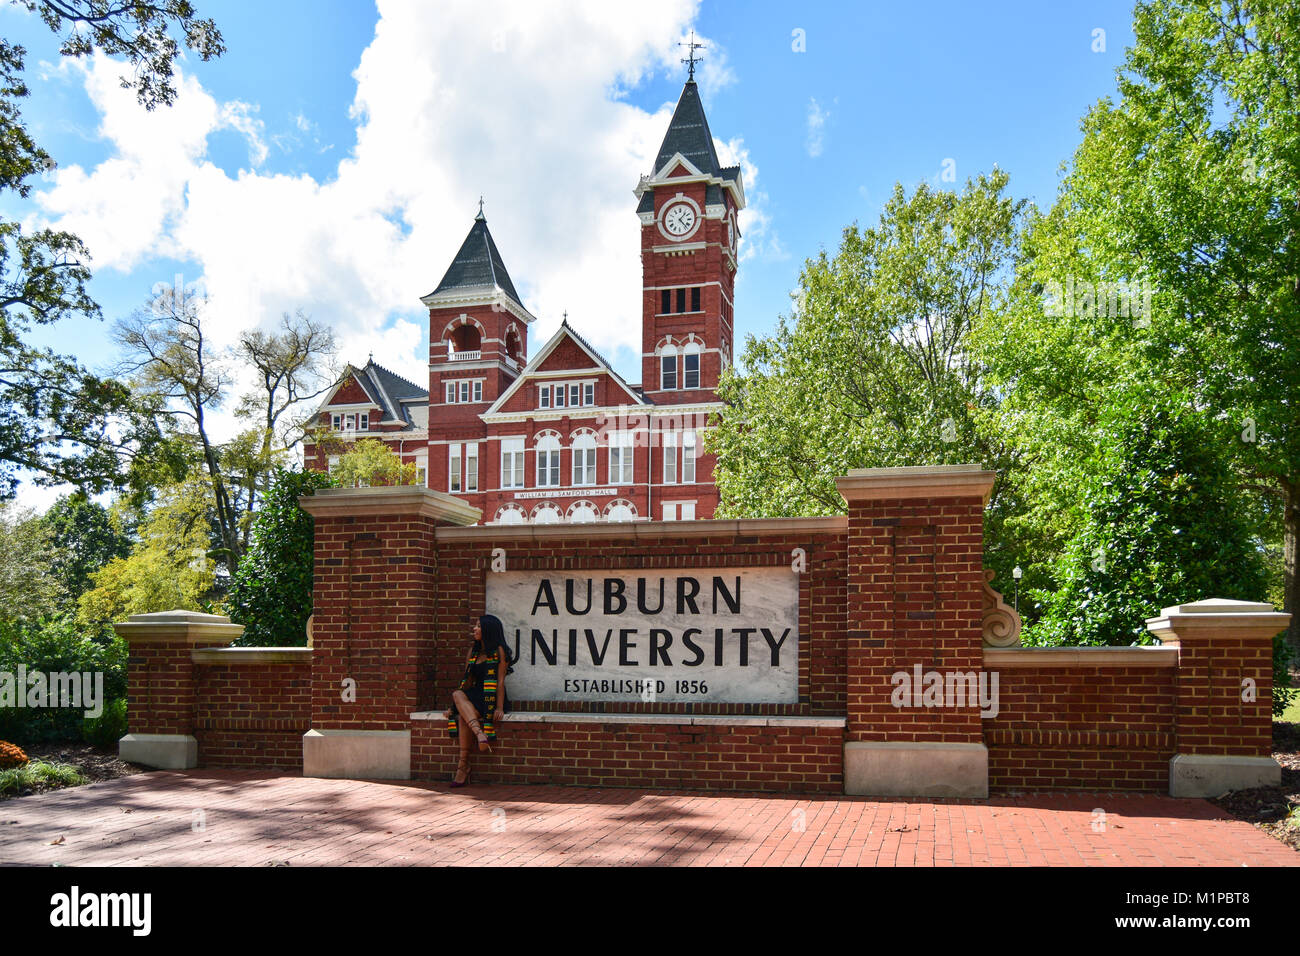 AUBURN, AL - Oktober 10,20 17: Auburn University in Auburn, Alabama ist eine öffentliche Forschungseinrichtung Universität 1856 gegründet. Stockfoto